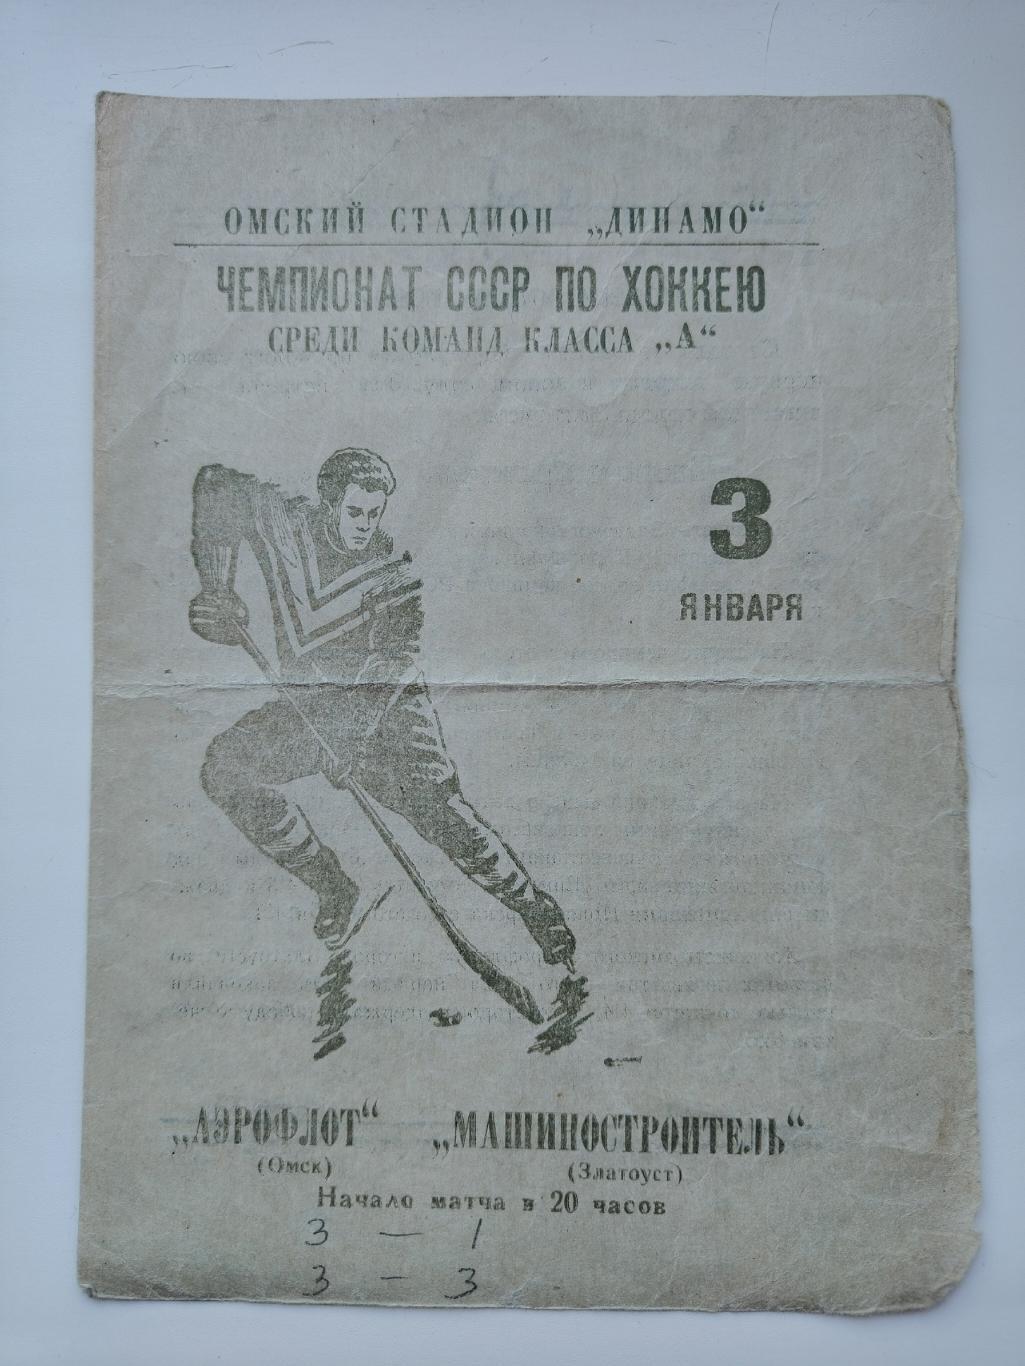 Аэрофлот Омск - Машиностроитель Златоуст 3 января 1966